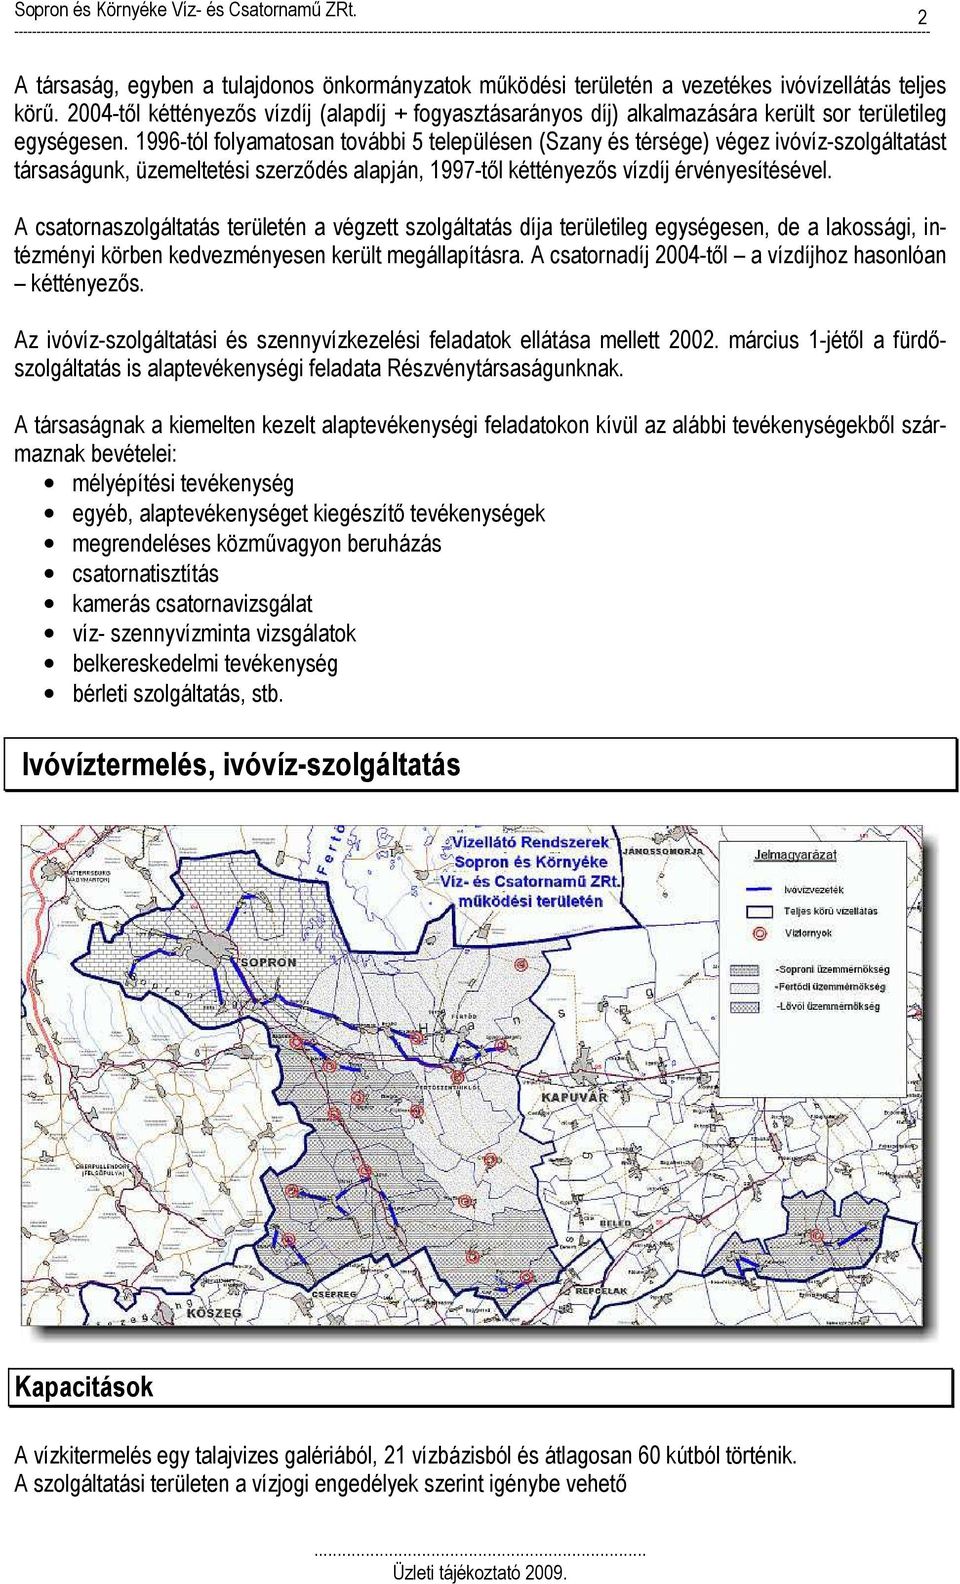 1996-tól folyamatosan további 5 településen (Szany és térsége) végez ivóvíz-szolgáltatást társaságunk, üzemeltetési szerződés alapján, 1997-től kéttényezős vízdíj érvényesítésével.